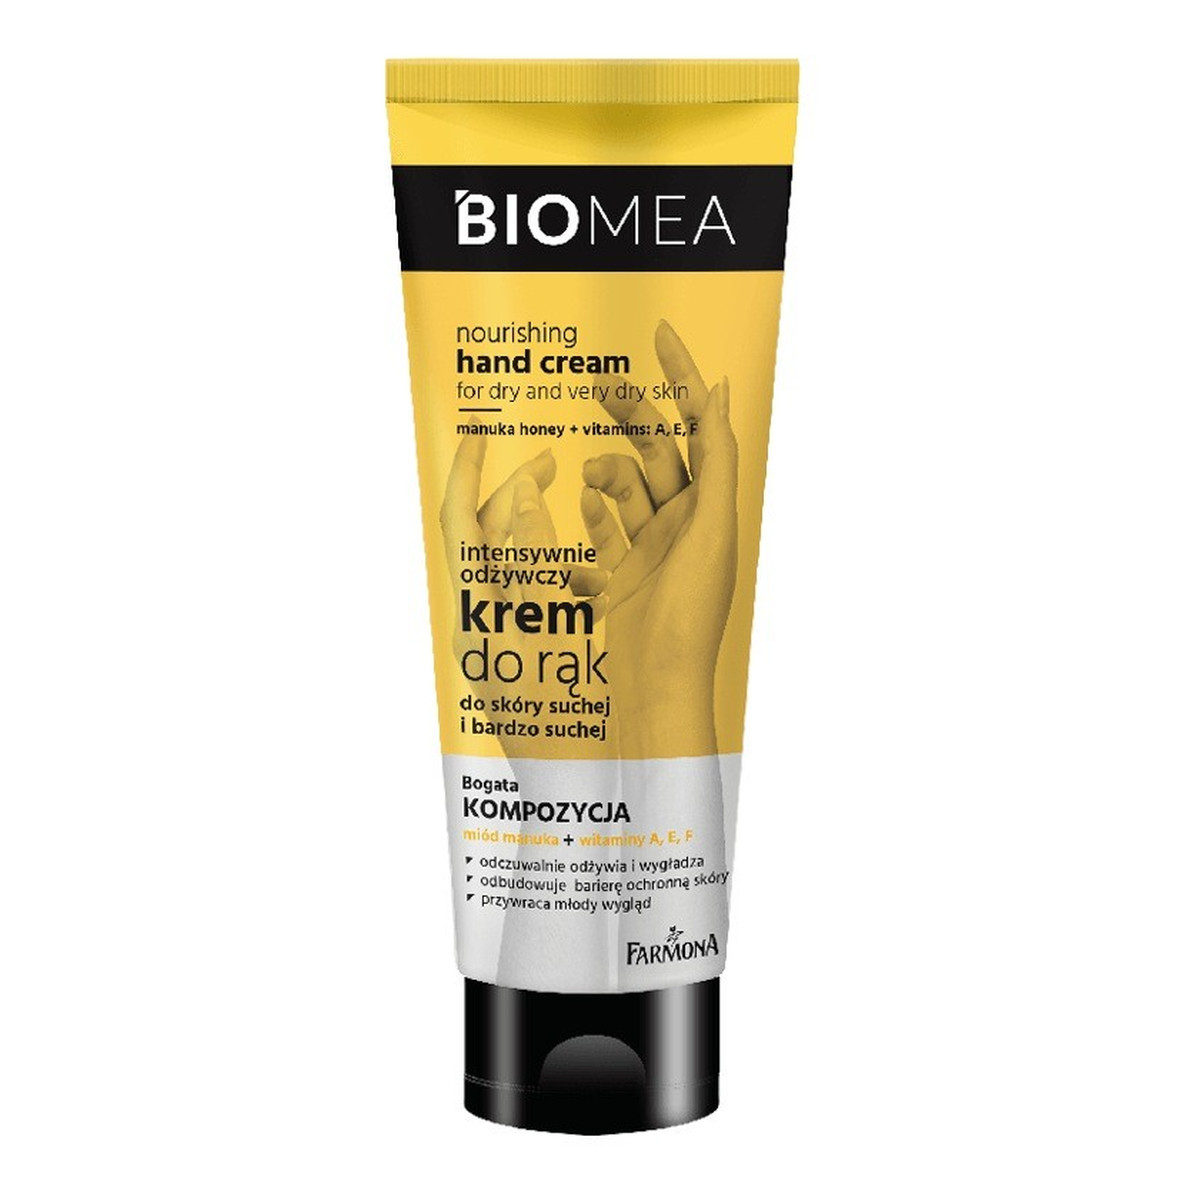 Farmona Biomea Intensywnie Odżywczy Krem do rąk - skóra sucha i bardzo sucha 100ml